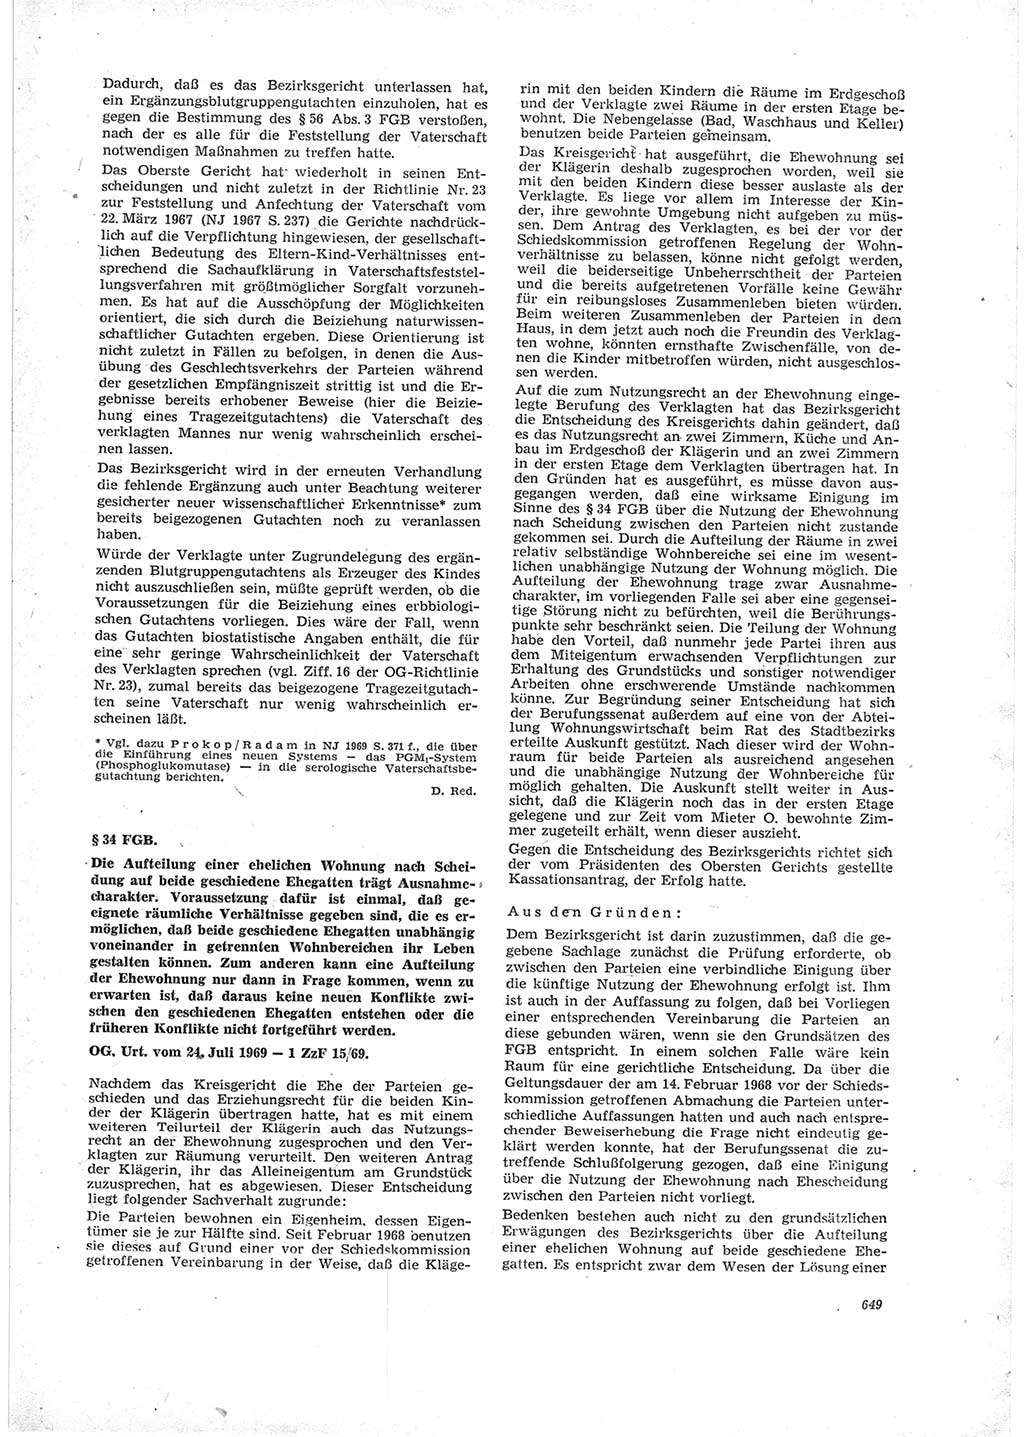 Neue Justiz (NJ), Zeitschrift für Recht und Rechtswissenschaft [Deutsche Demokratische Republik (DDR)], 23. Jahrgang 1969, Seite 649 (NJ DDR 1969, S. 649)